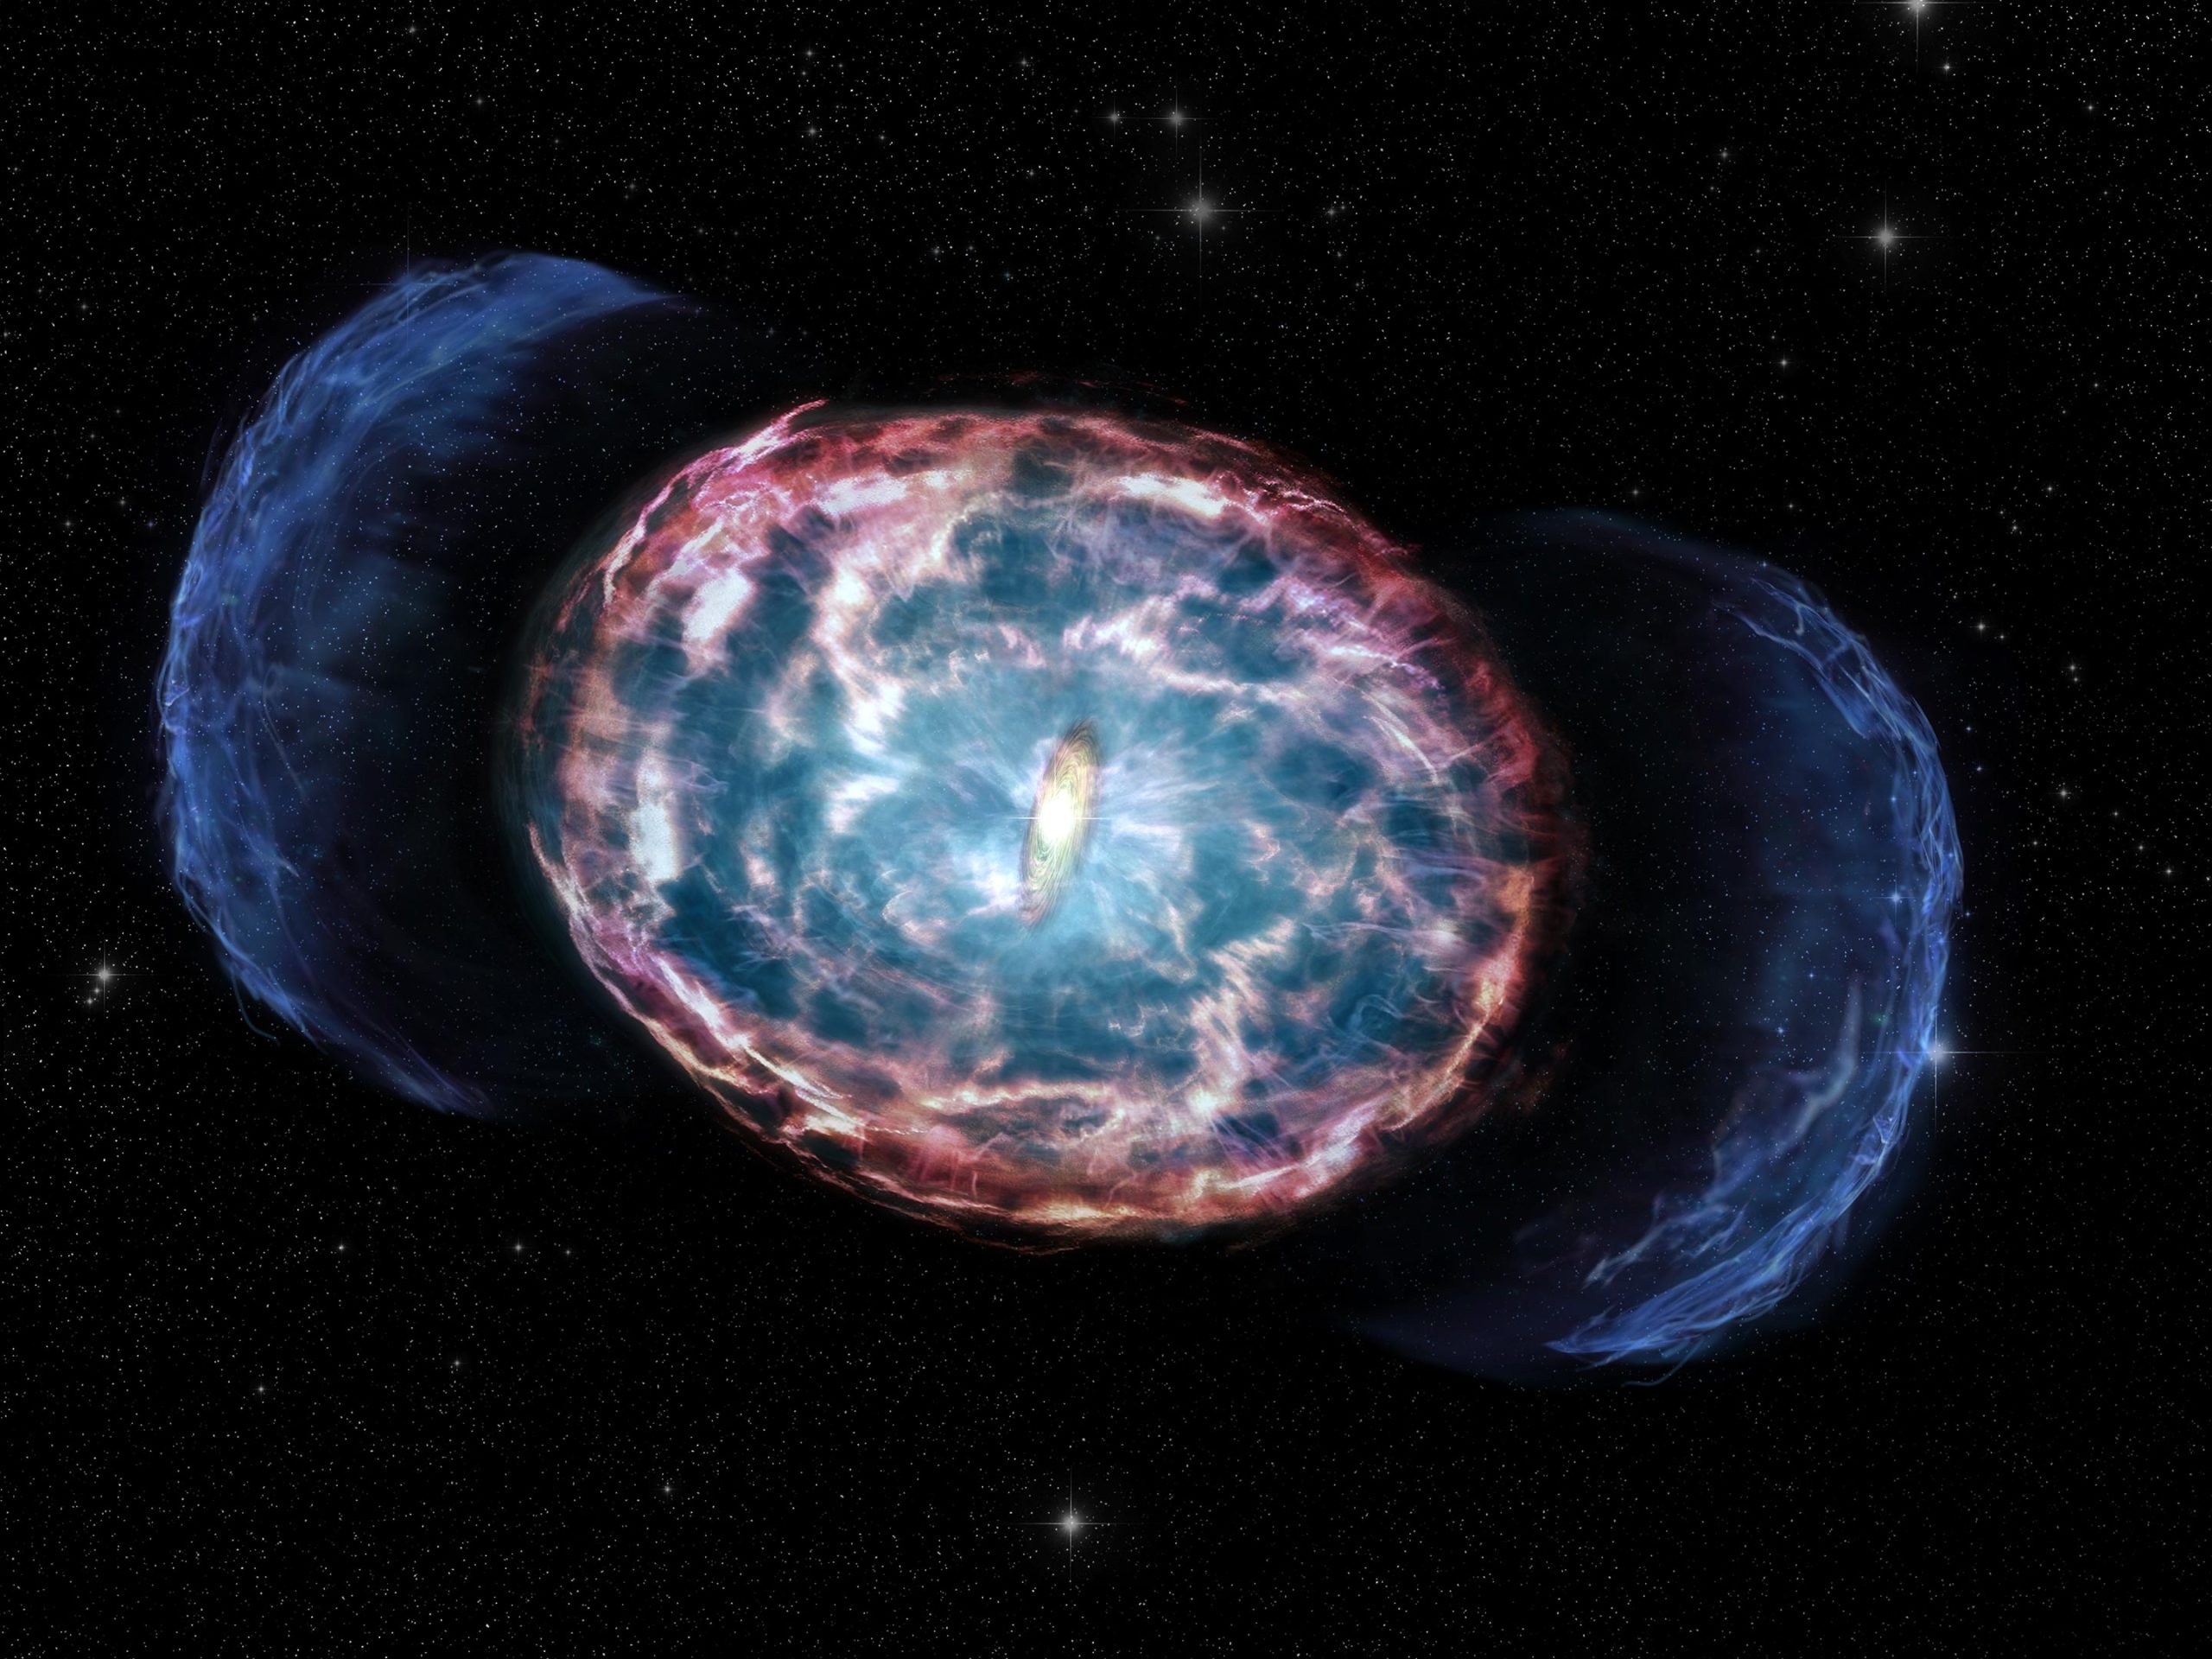 El resplandor radiactivo de Kilonova sugiere una rápida regresión del giro tardío de las estrellas de neutrones hacia el agujero negro.